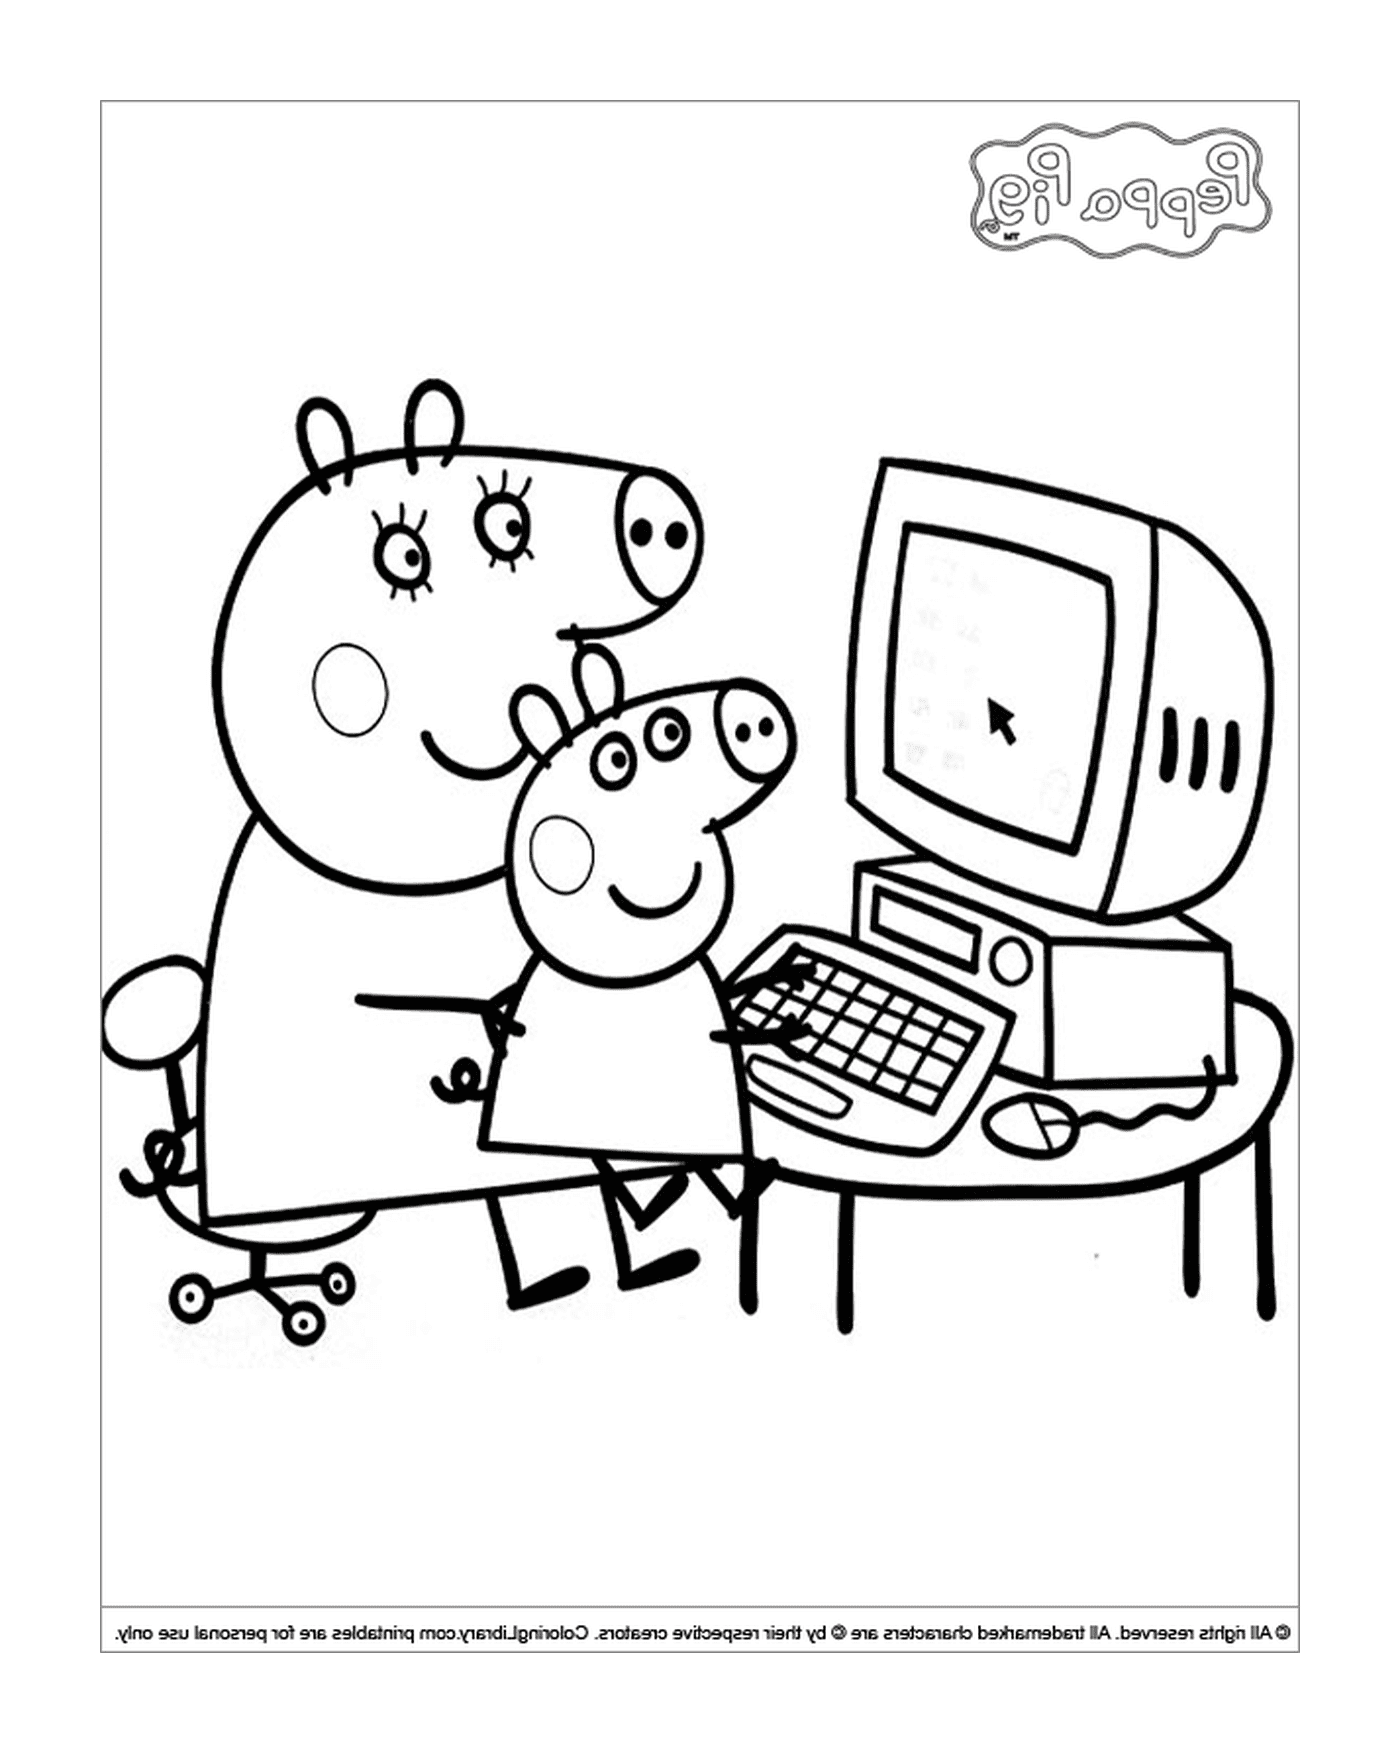  Peppa Pig y su padre en el ordenador 